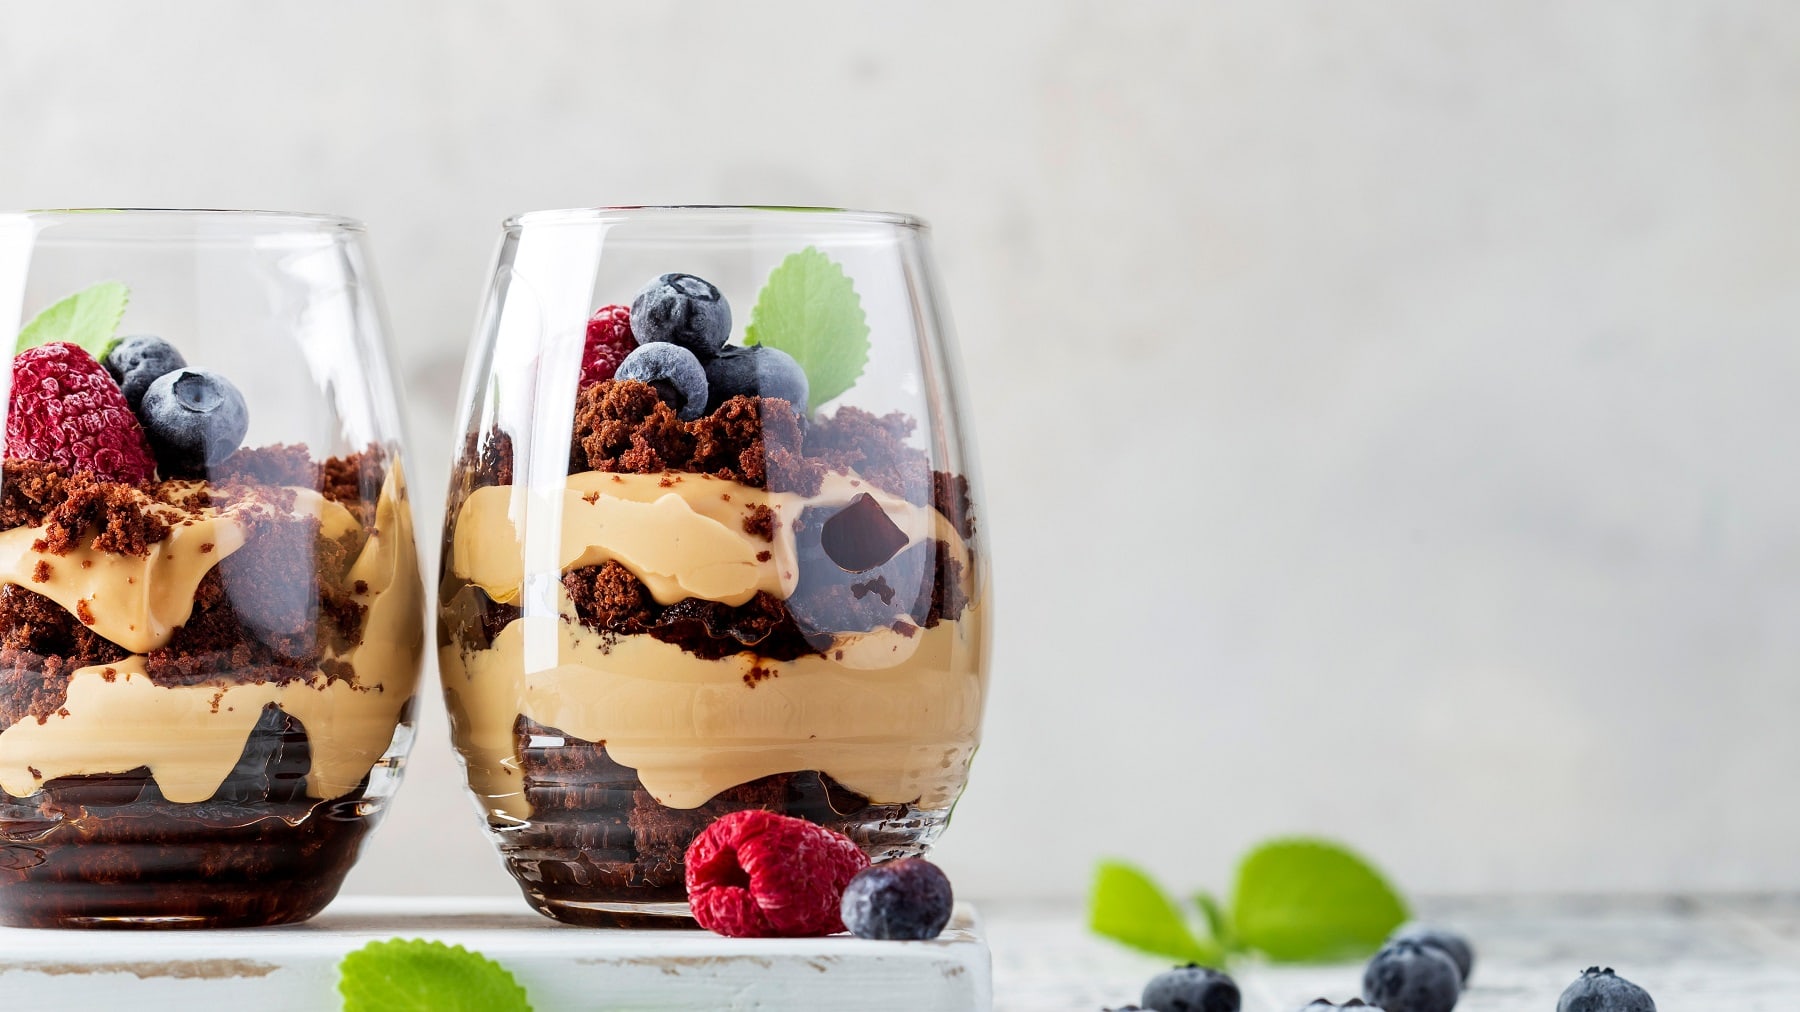 Zwei Gläser mit dem Schoko-Beeren-Dessert auf einem hellen Tisch mit Heidelbeeren und Zitronenmelisse.